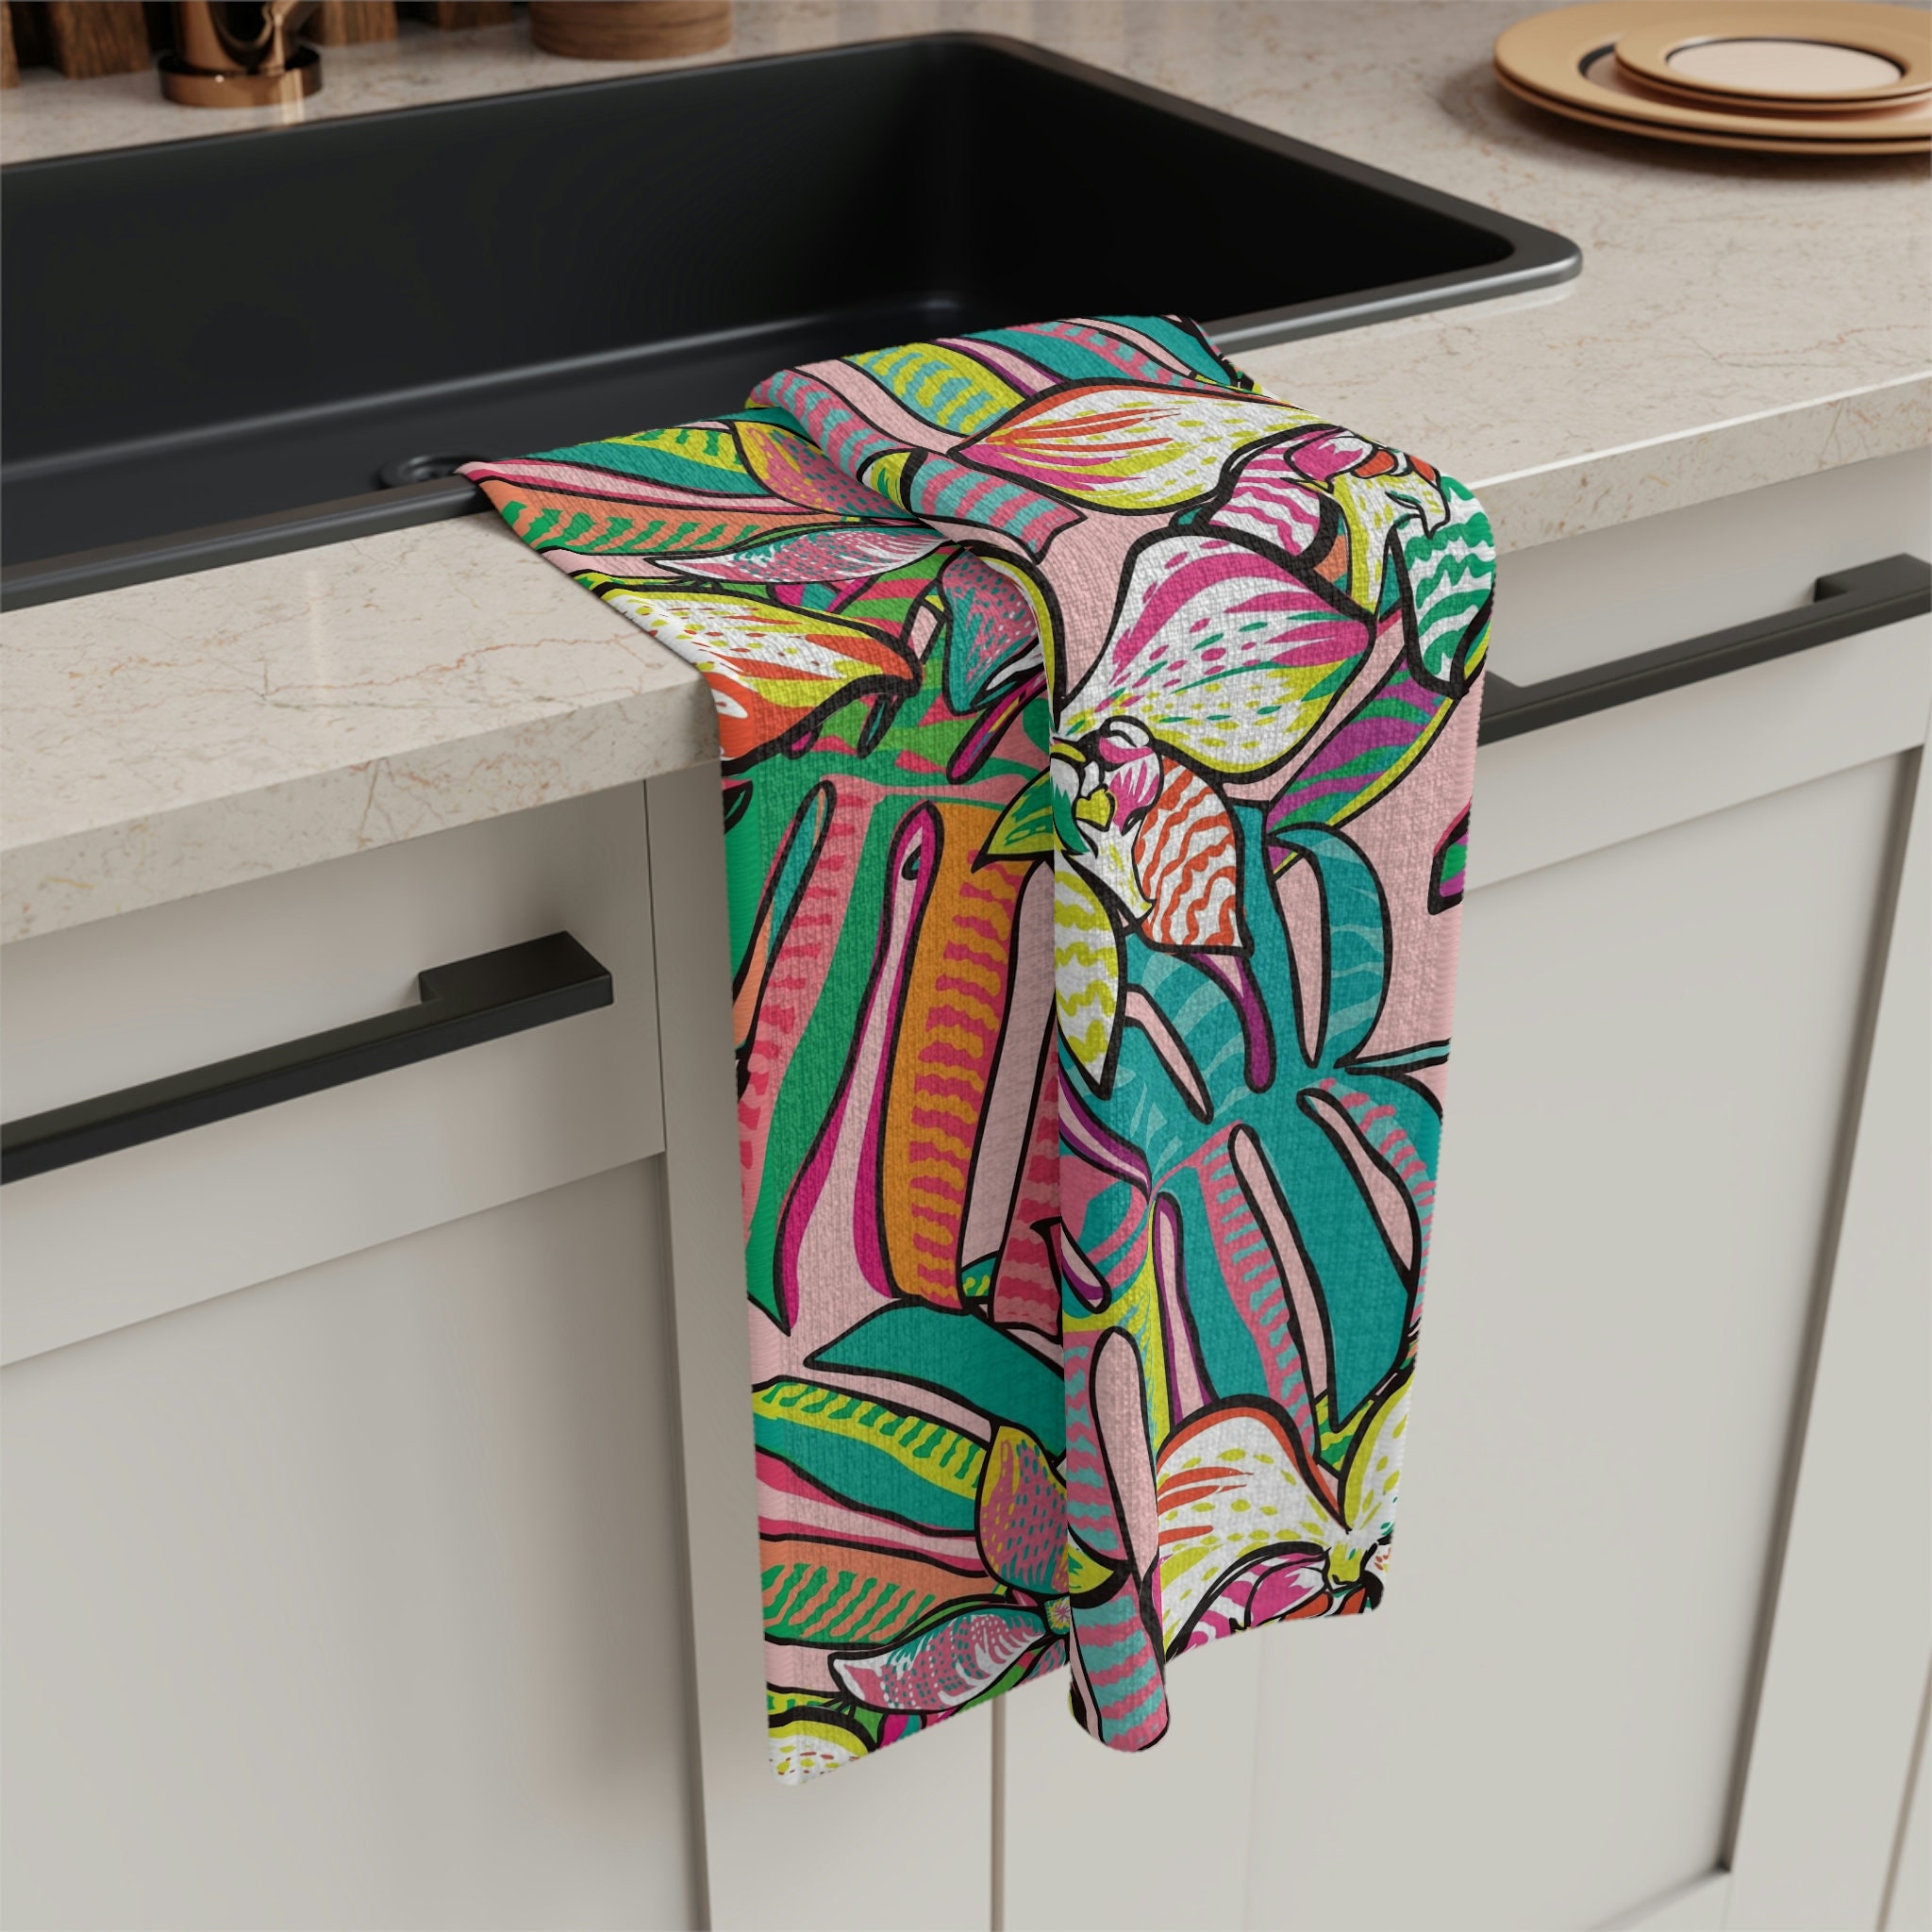 Hanging Kitchen Towel, Kitchen Towels,fun Summer Kitchen Decor